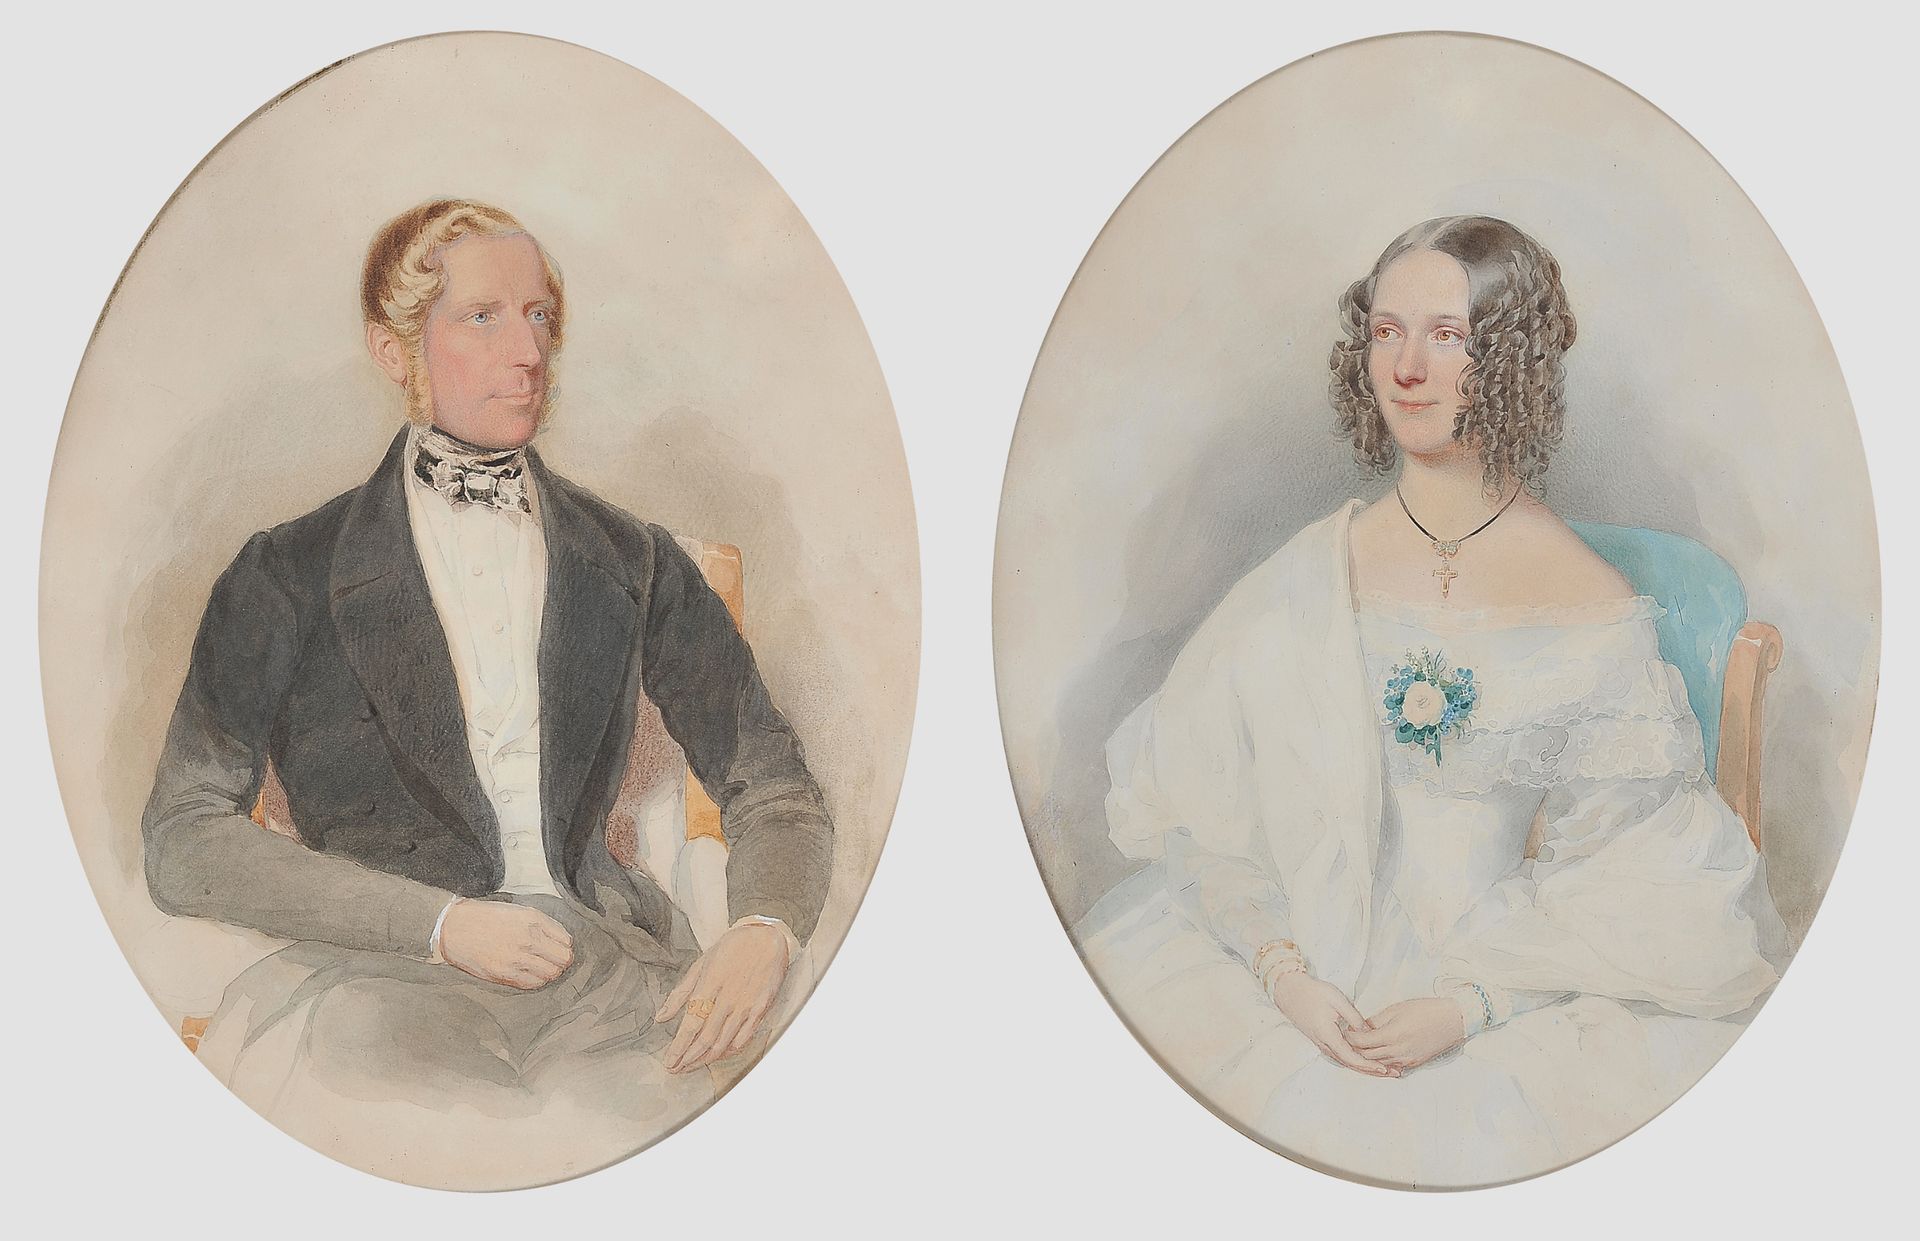 Null 阿尔伯特-蒂尔


约翰内斯堡 1815 - 1902 维也纳


一对家庭画像


纸上水彩画


装在原来的镀金比德梅尔画框中


女主人的画像在&hellip;